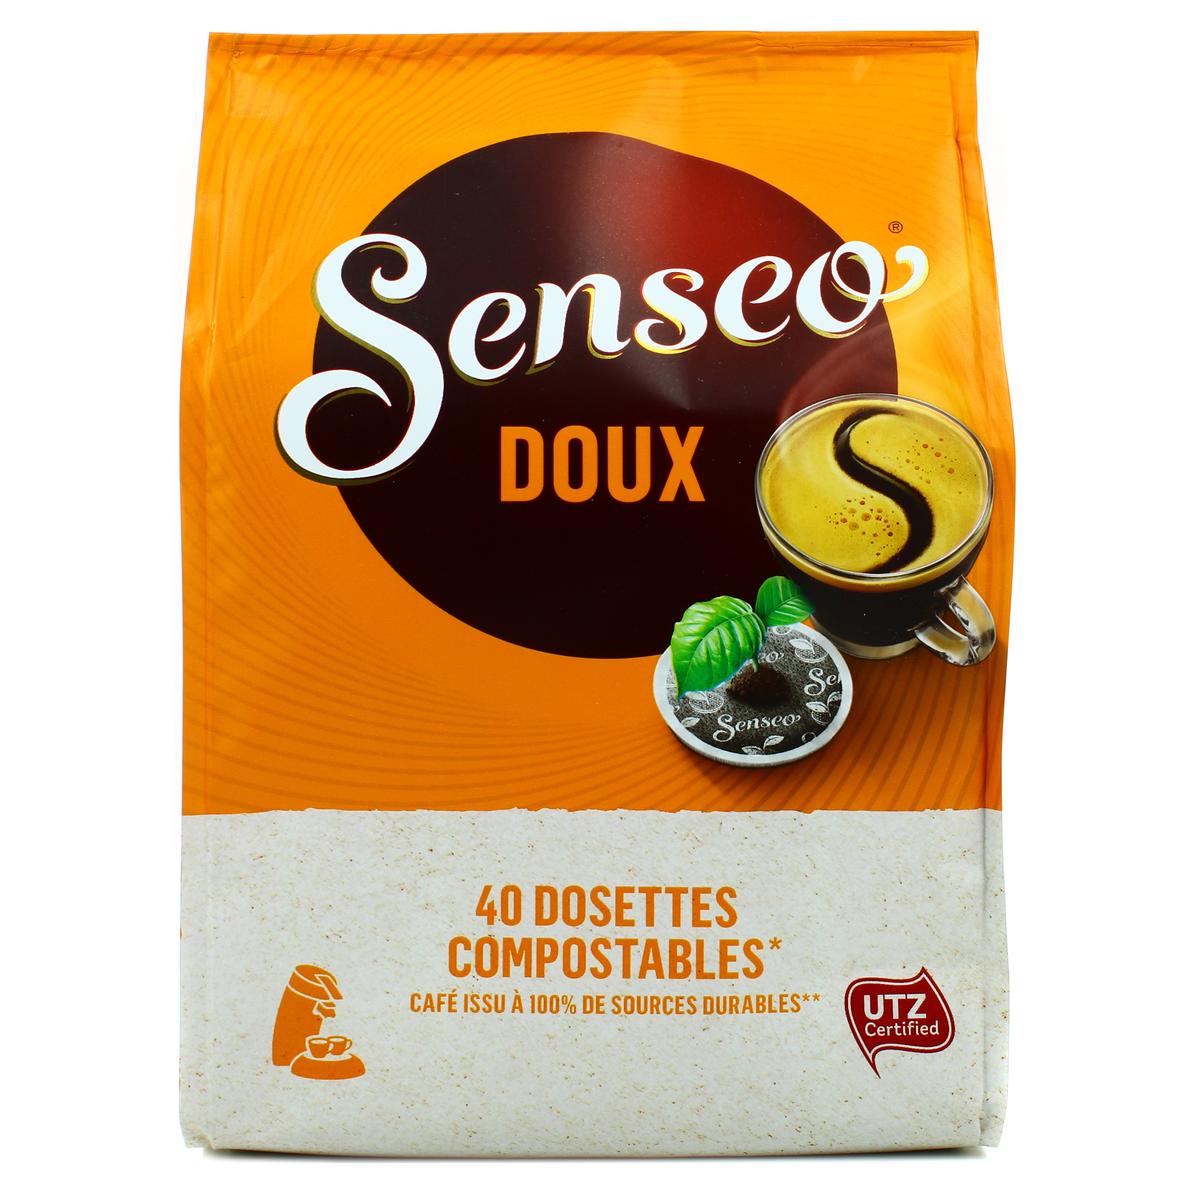 Senseo Doux (Format familial) - 54 dosettes - Café Dosette